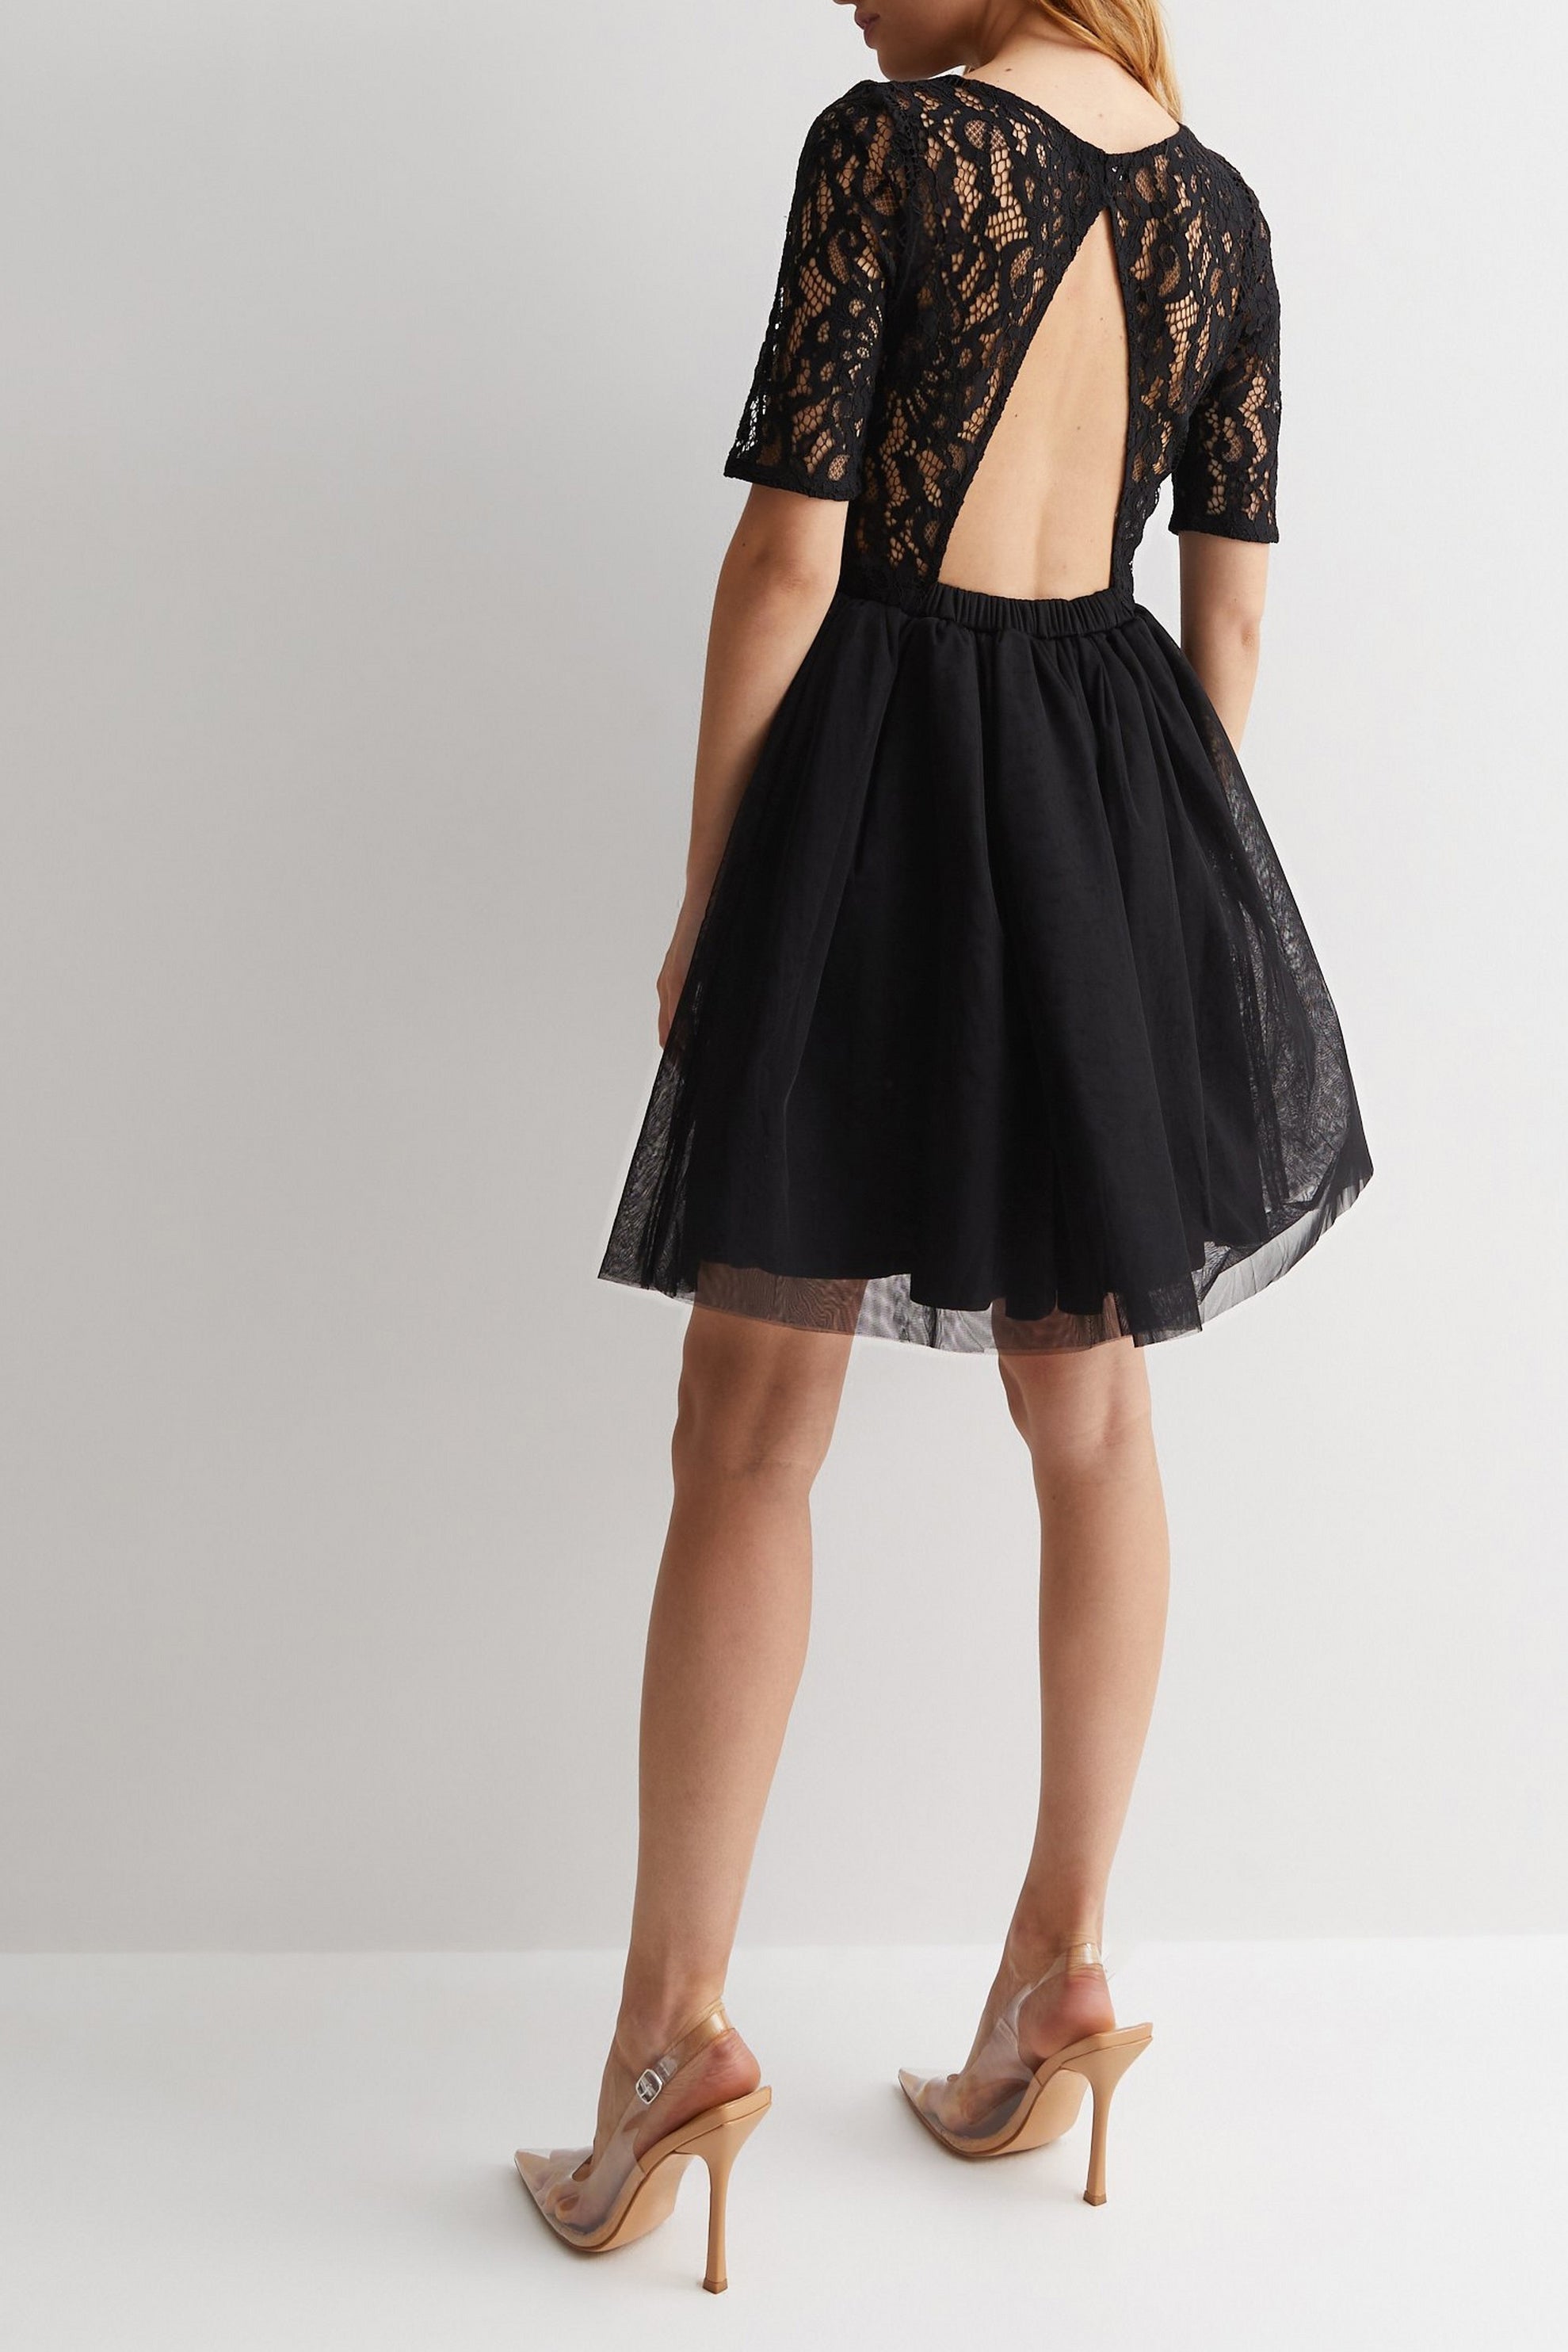 Black Lace Open Back Mini Dress